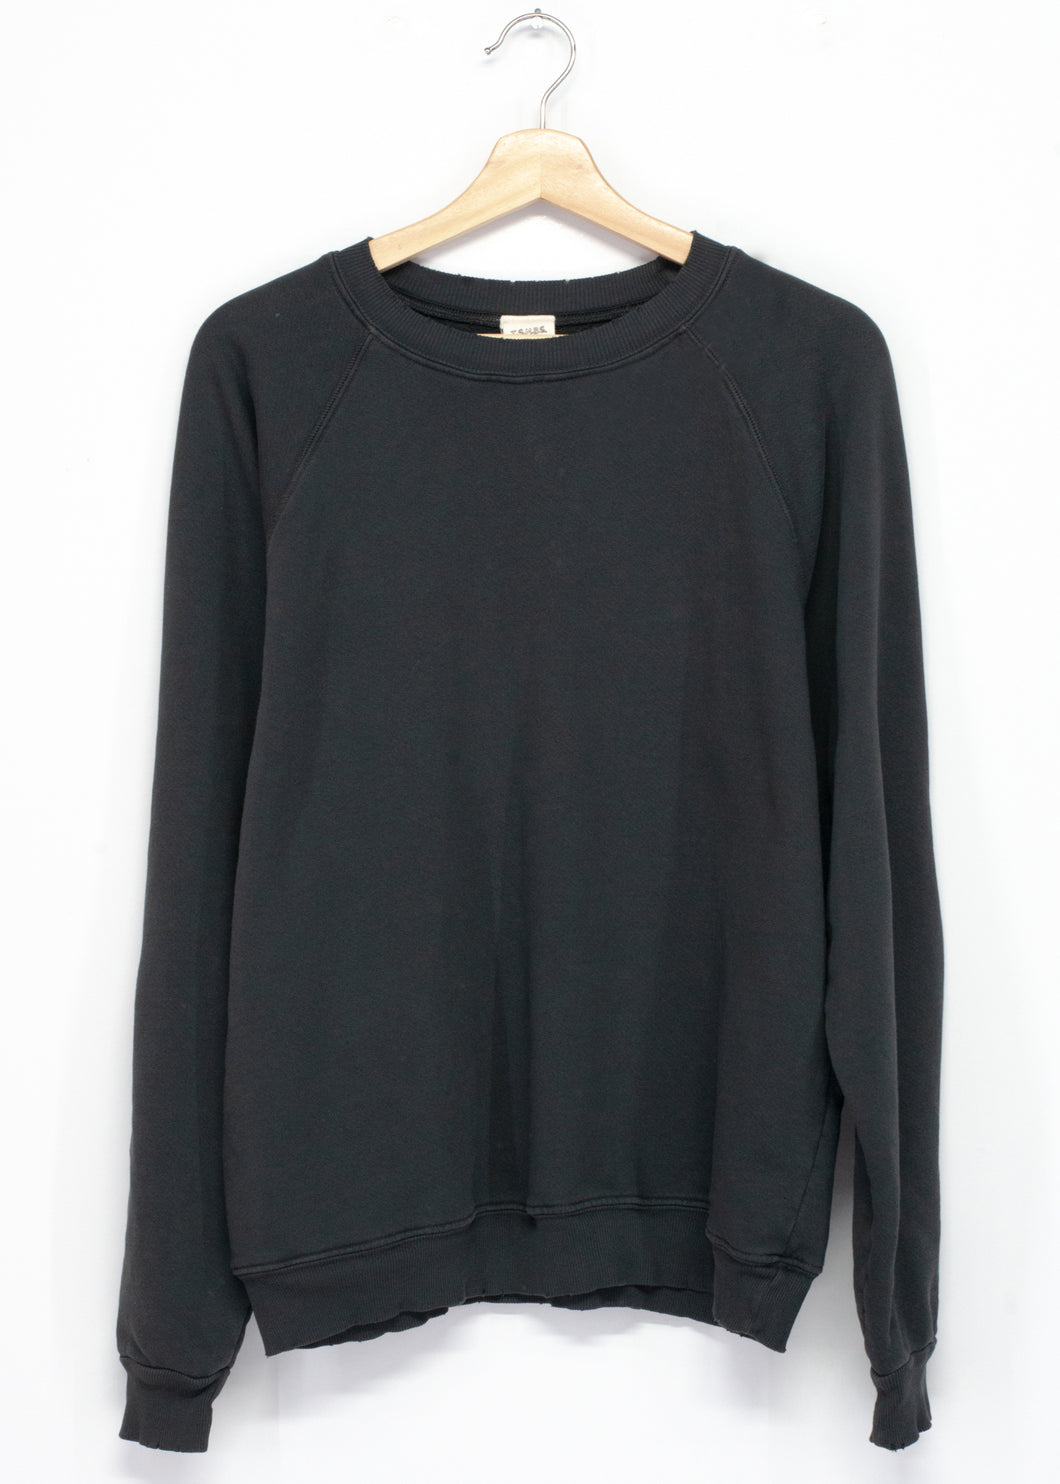 Solid Sweatshirt - Pioneer Way Vintage Black